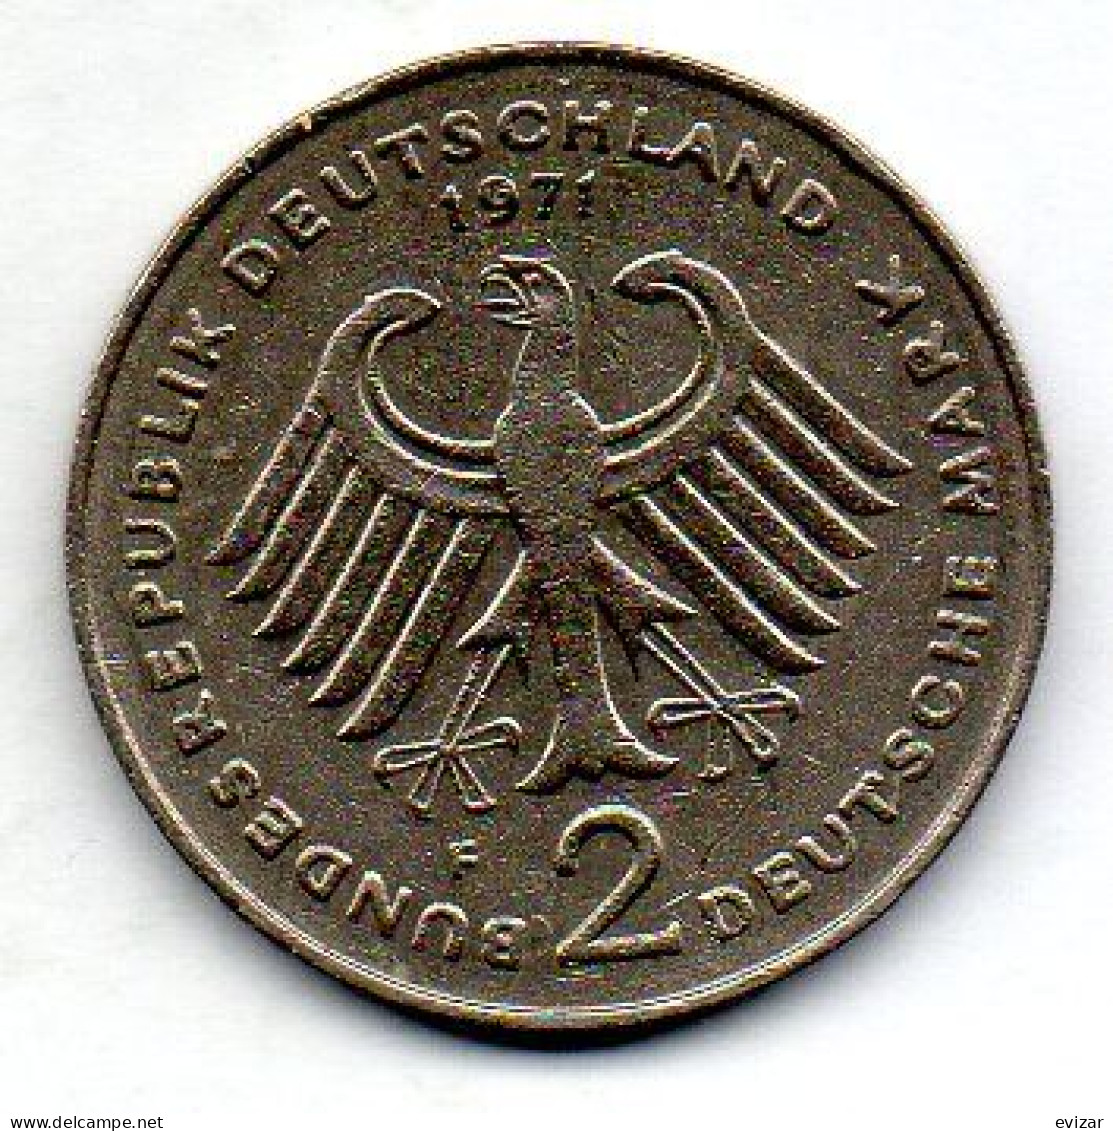 GERMANY - FEDERAL REPUBLIC, 2 Mark, Copper-Nickel, Year 1971-F, KM # 127 - 2 Marcos